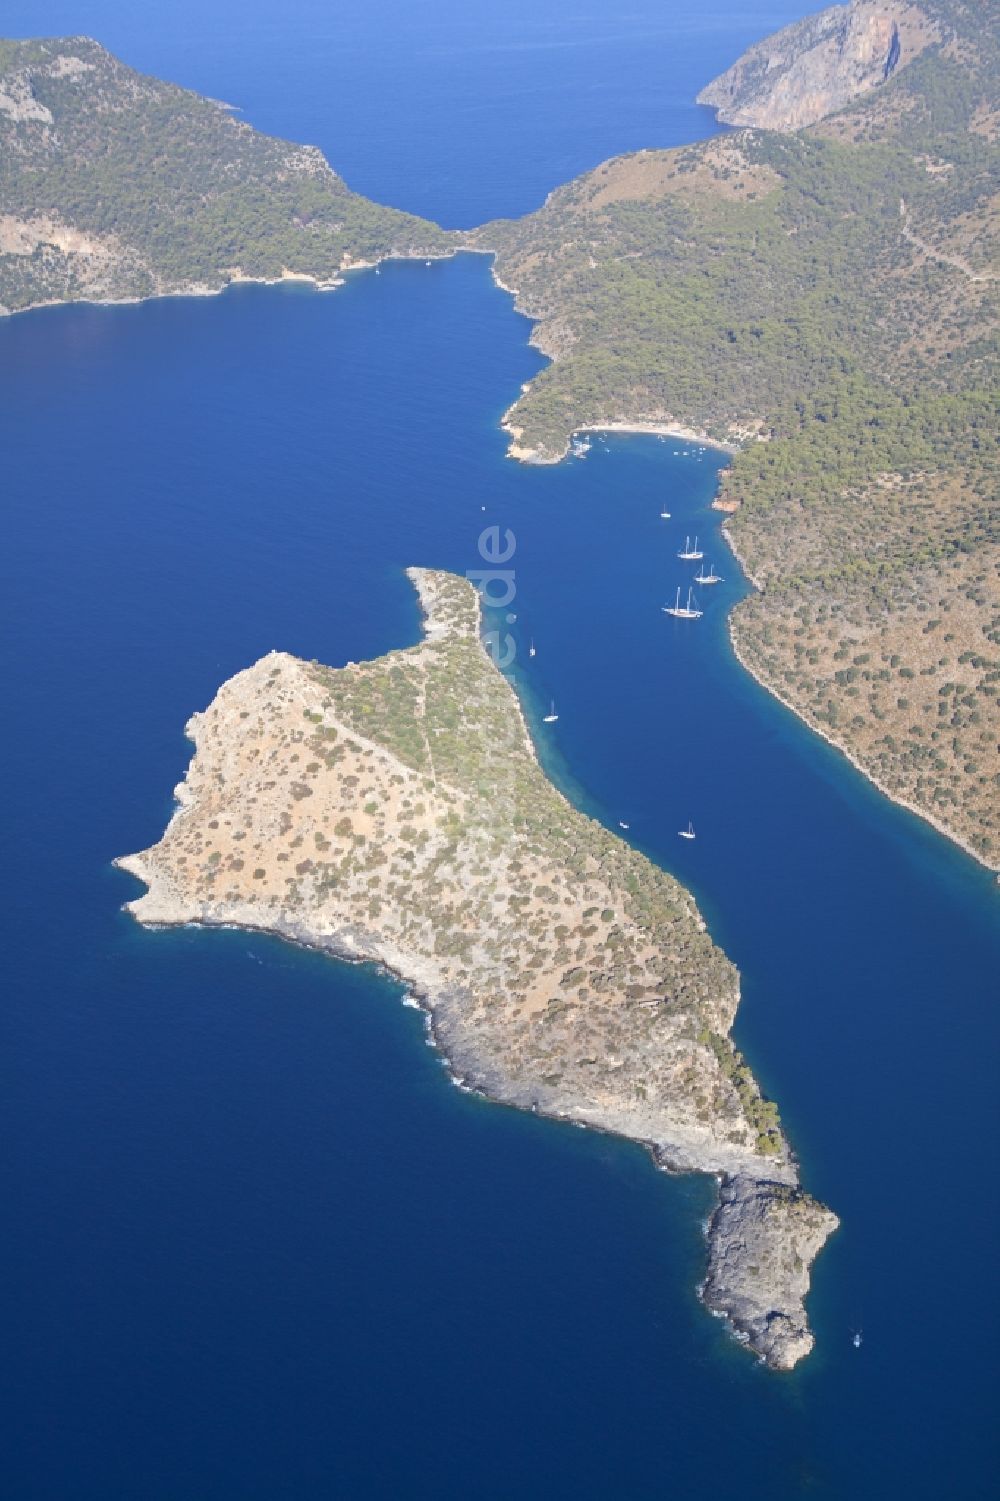 Luftbild Ölüdeniz - St-Nikolaus-Insel in der Bucht von Ölüdeniz an der Türkischen Ägäis in der Türkei